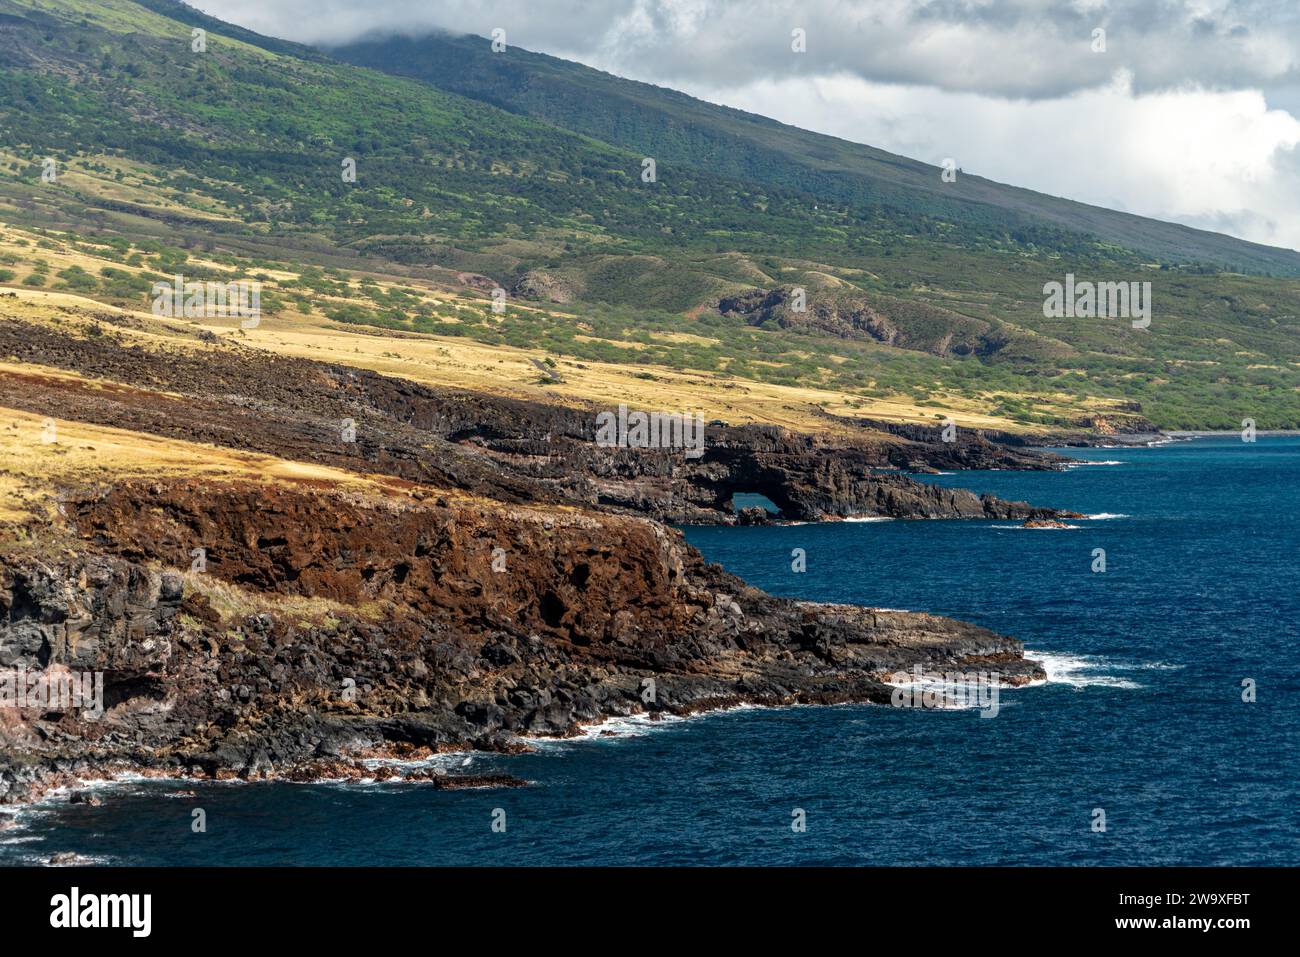 La escarpada costa de roca de lava de la costa sur de Maui contrasta con el azul sereno del Océano Pacífico. Foto de stock